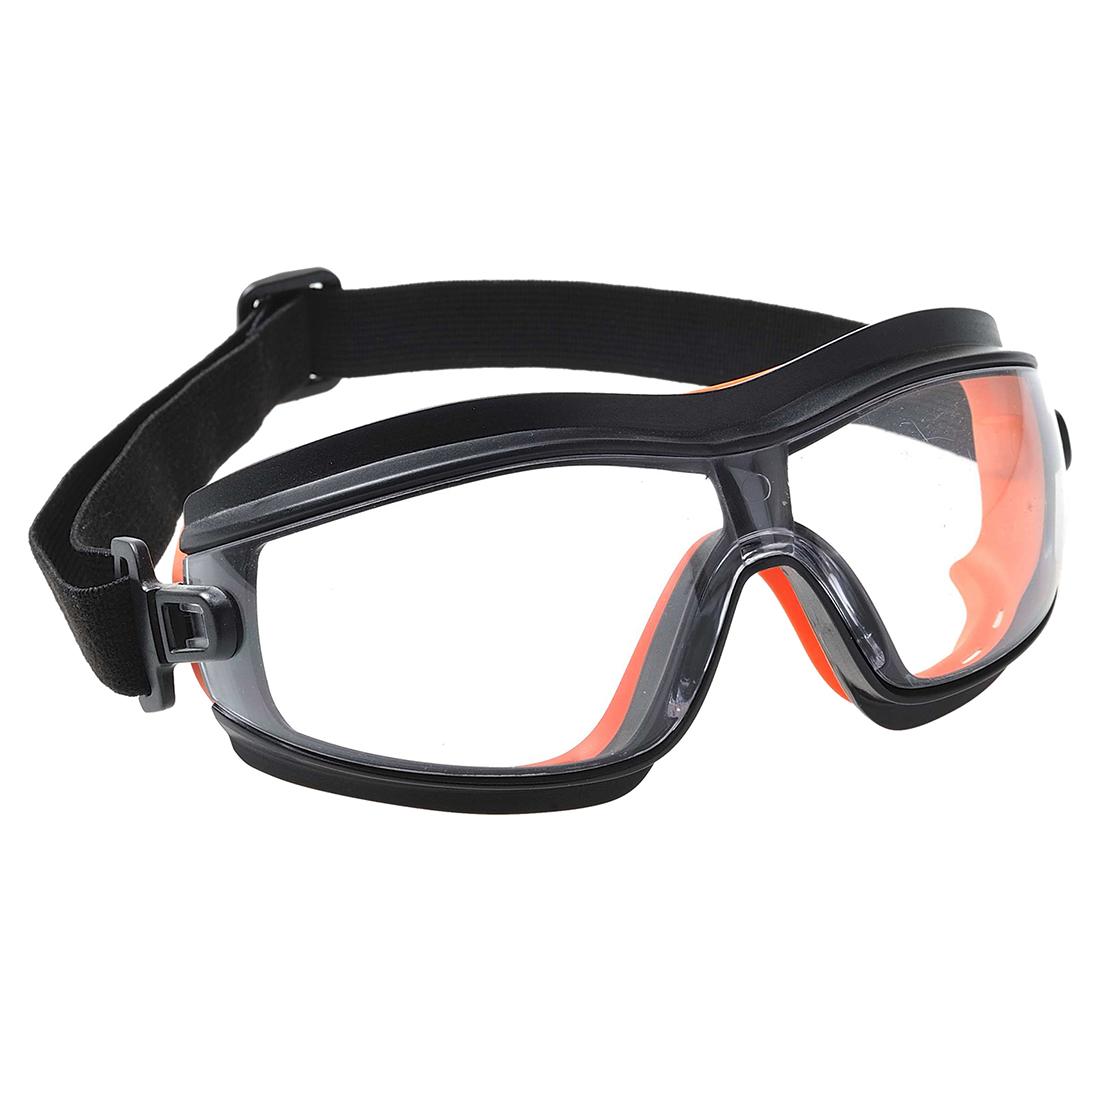 Специальные защитные очки. Очки Safety Goggles. Очки защитные "Safety " цв белый. DELTAPLUS en166. Очки защитные очк-001.